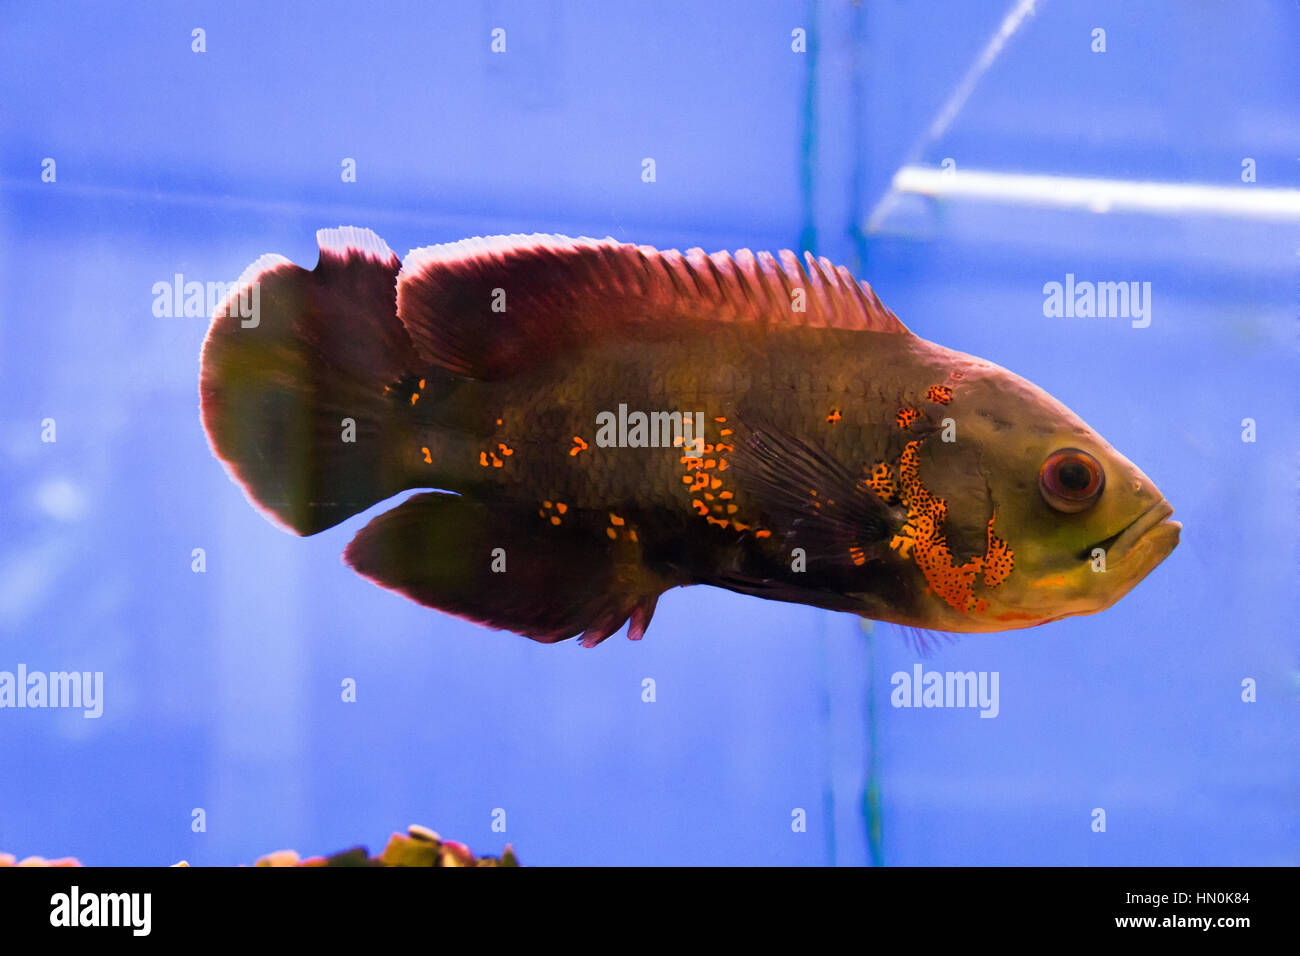 Photo of a astronotus ocellatus in aquarium Stock Photo